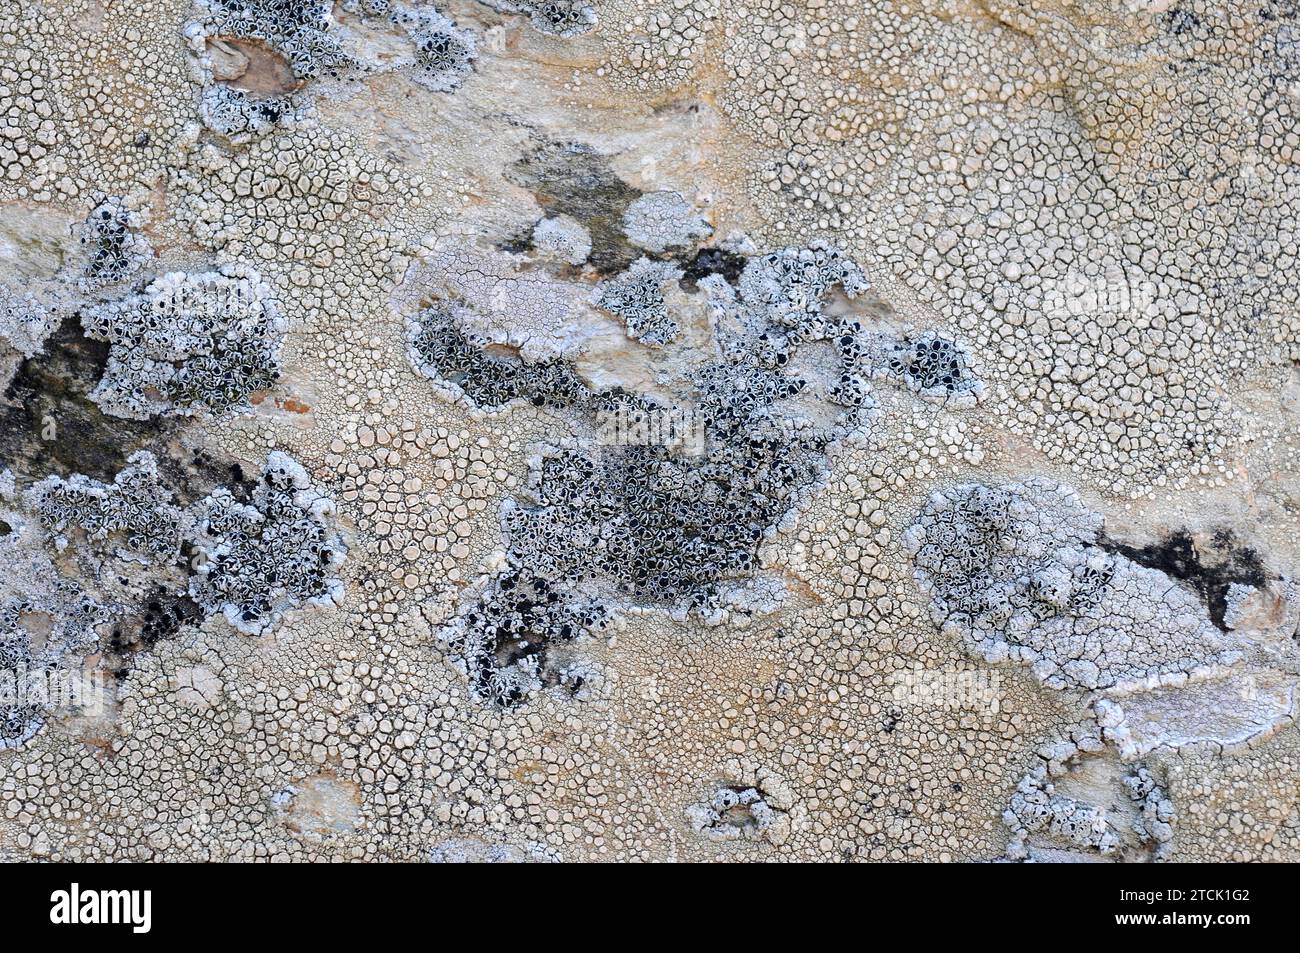 Ochrolechia parella (pinkish apothecia) and Tephromela atra (black apothecia), two crustoses lichens. Stock Photo